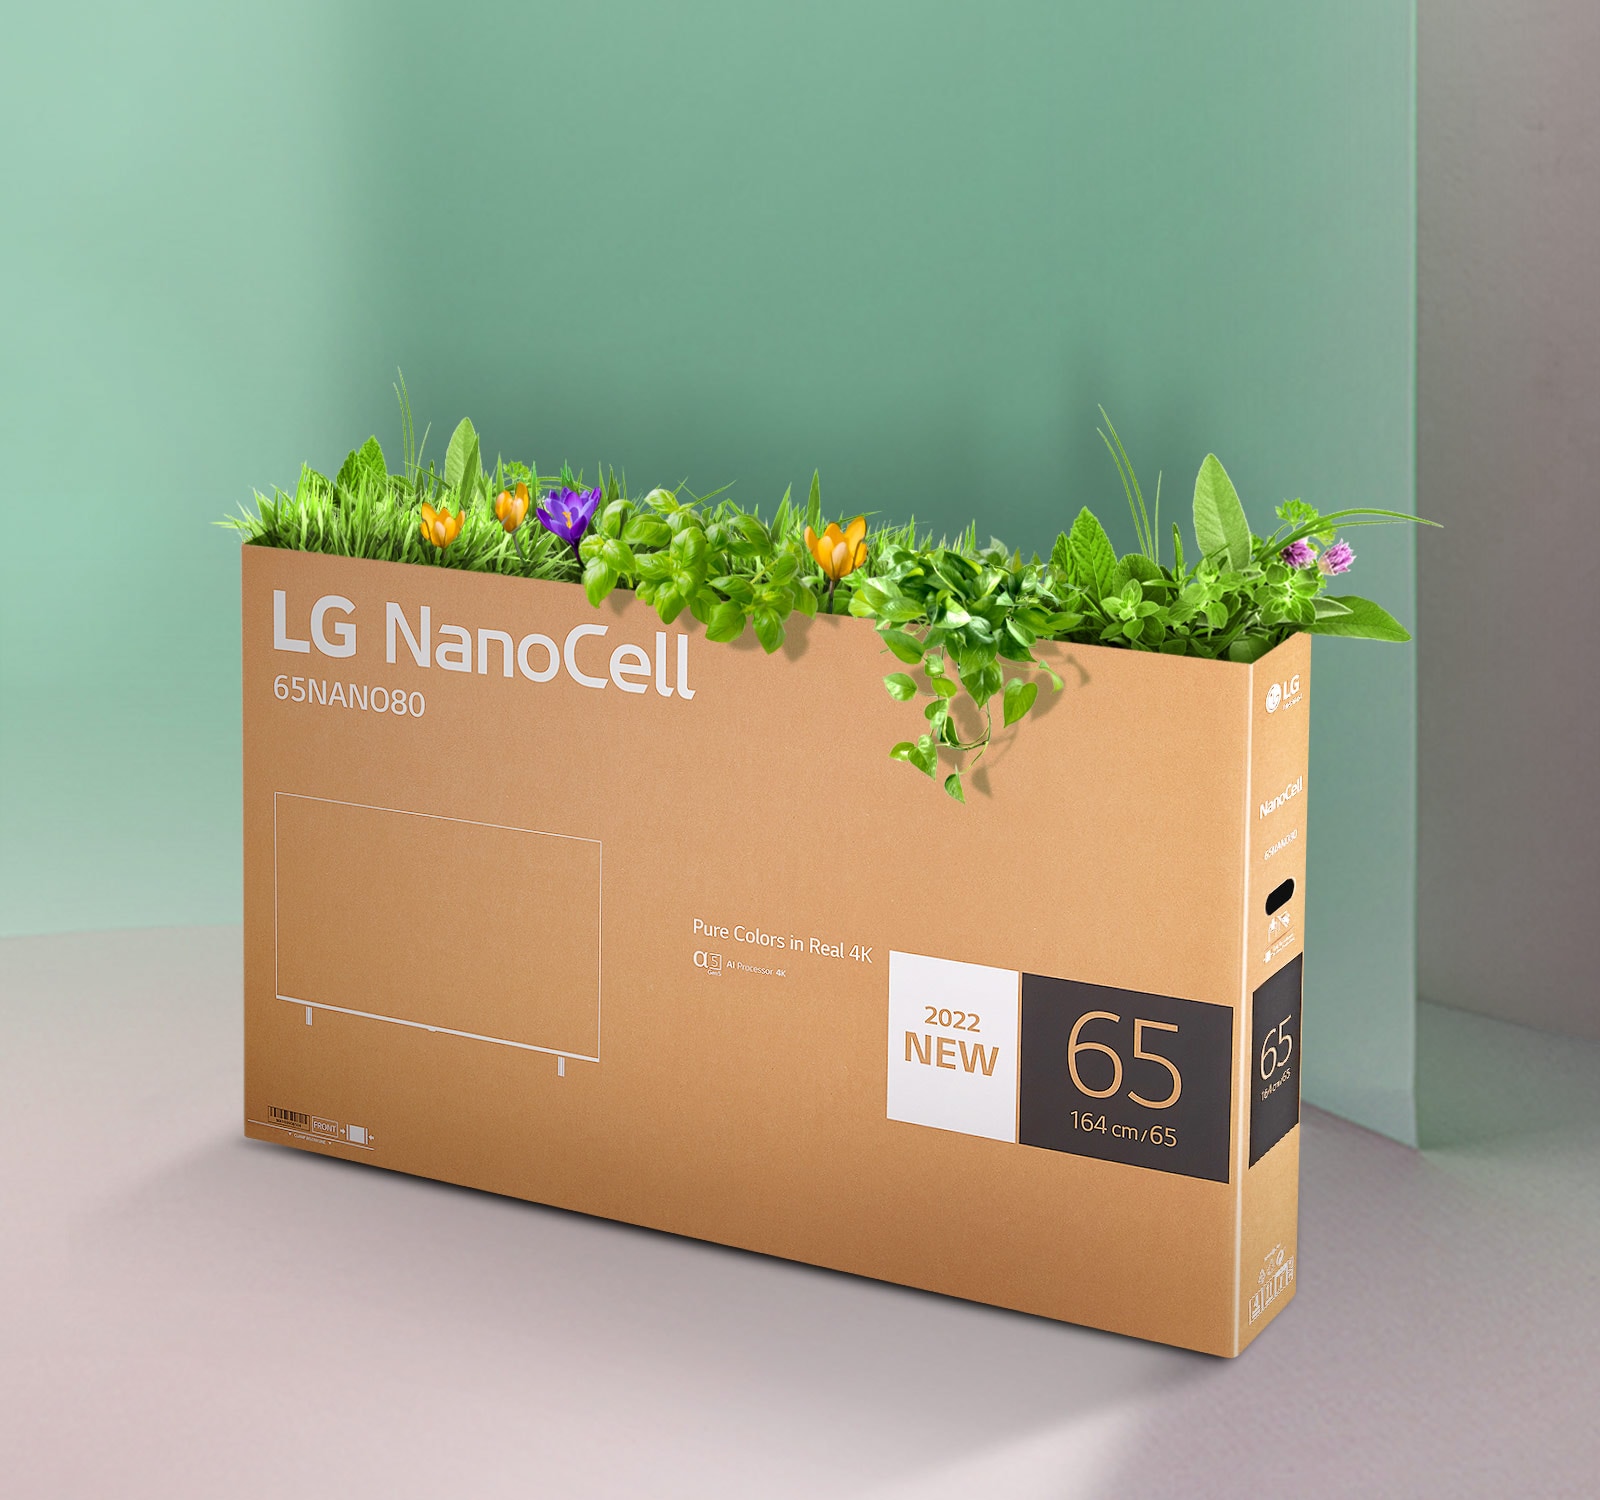 LG NanoCell 一奈米電視的可回收包裝盒頂部長出花草。